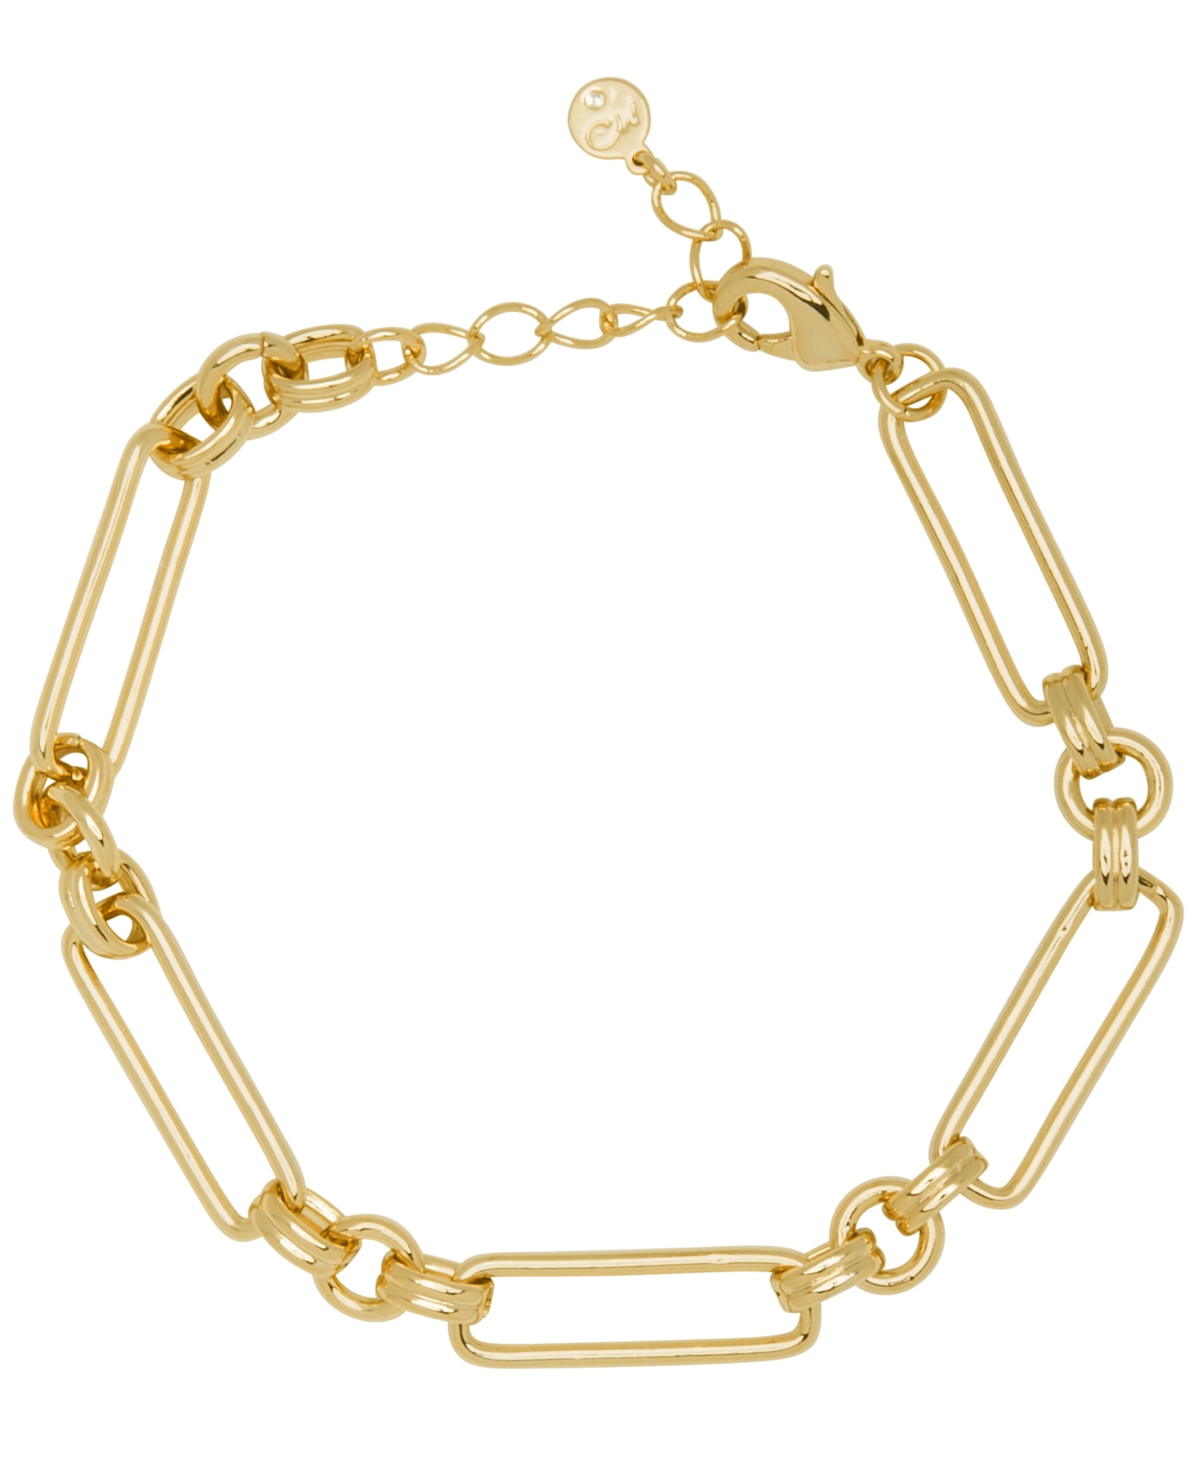 Women's Open Link Bracelet - Gold Plated